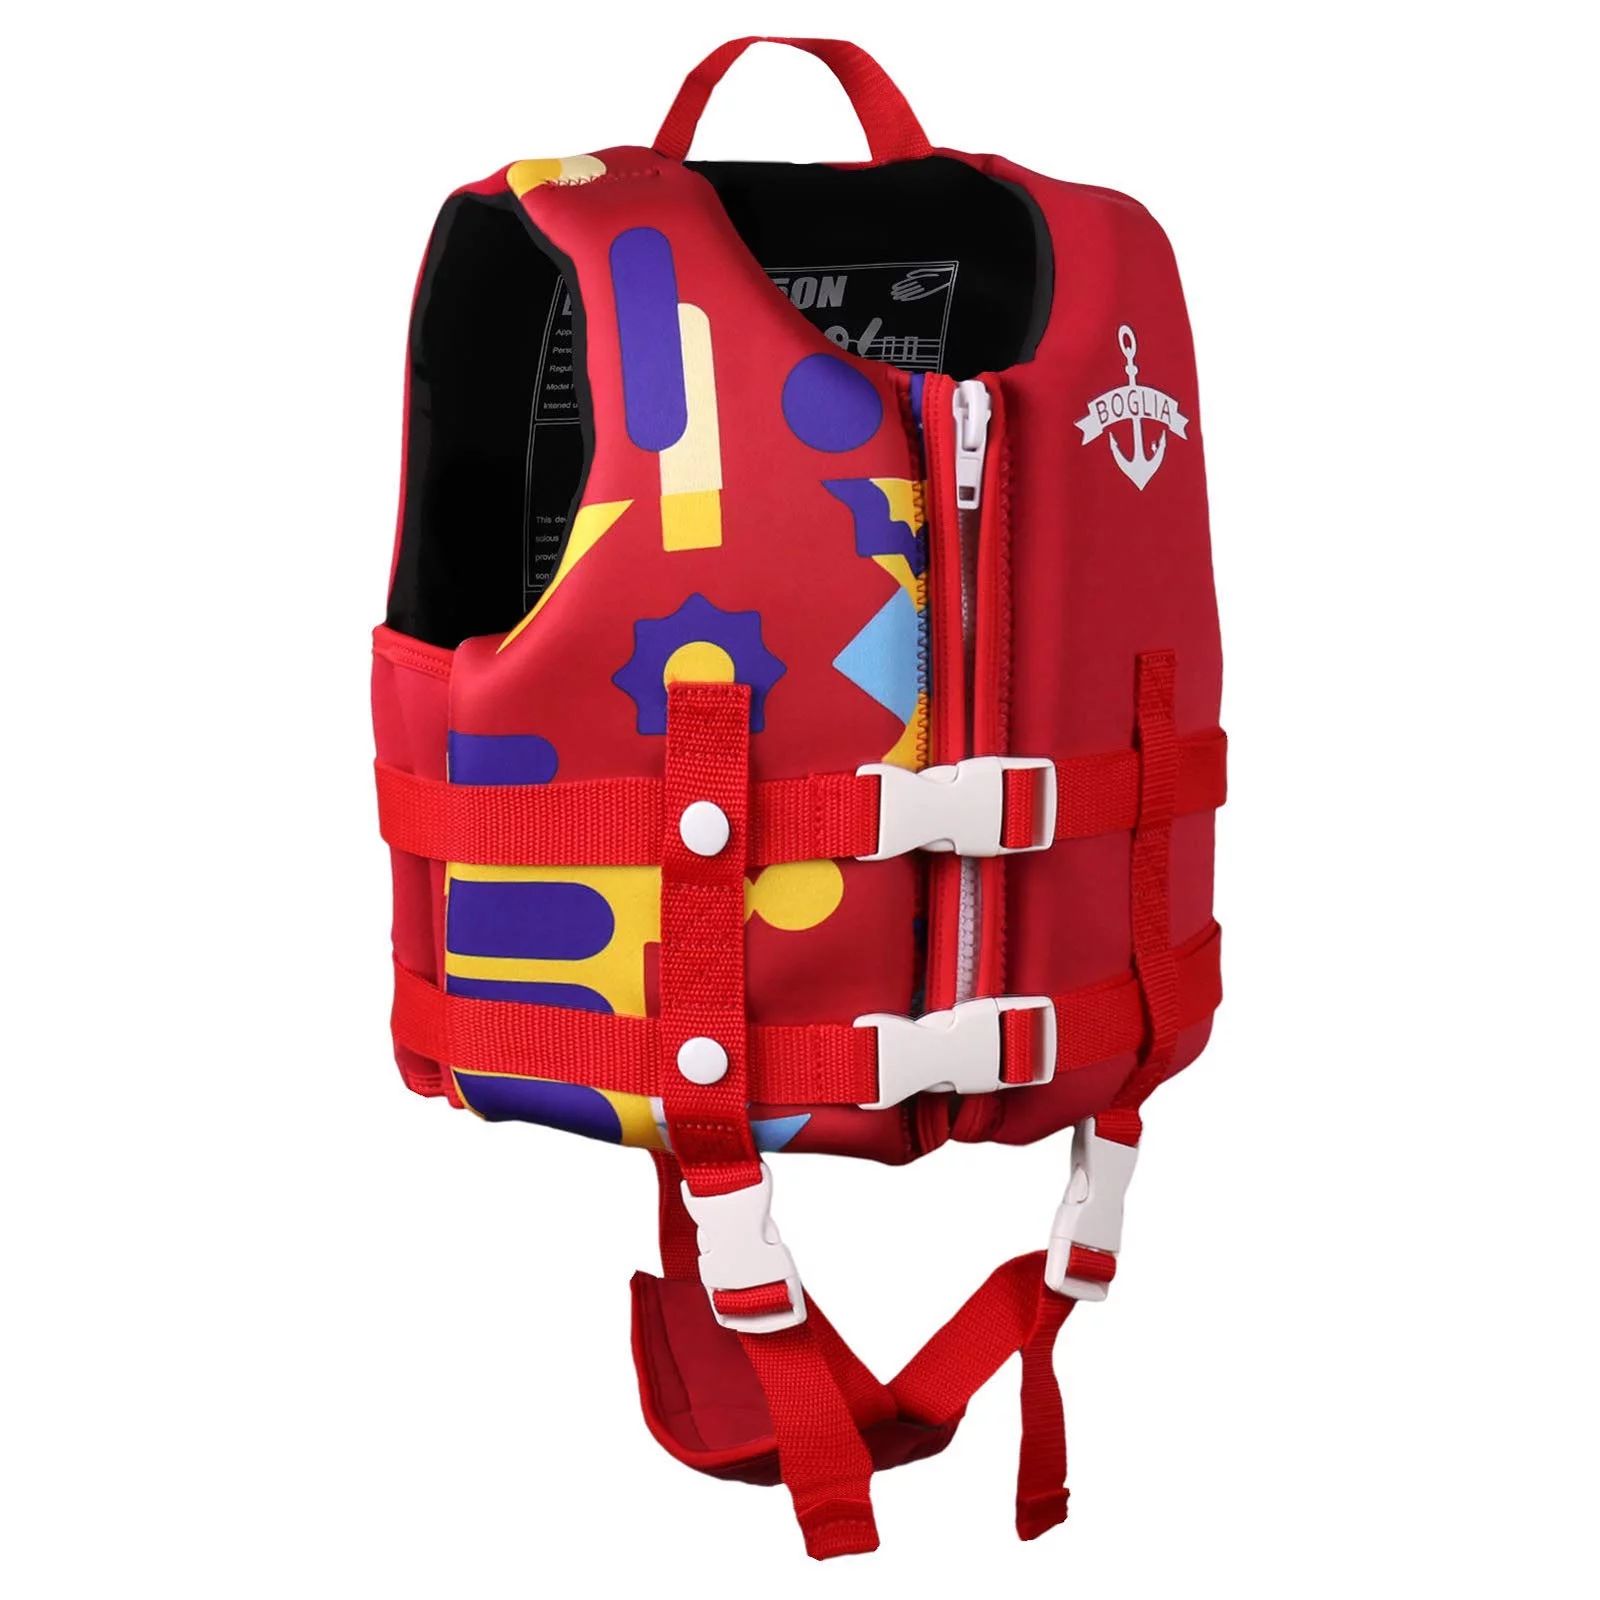 Boglia Kids Swim Vest Life Jacket Life Vest Pool Float with Adjustable Safety Strap,Floaties for ... | Walmart (US)